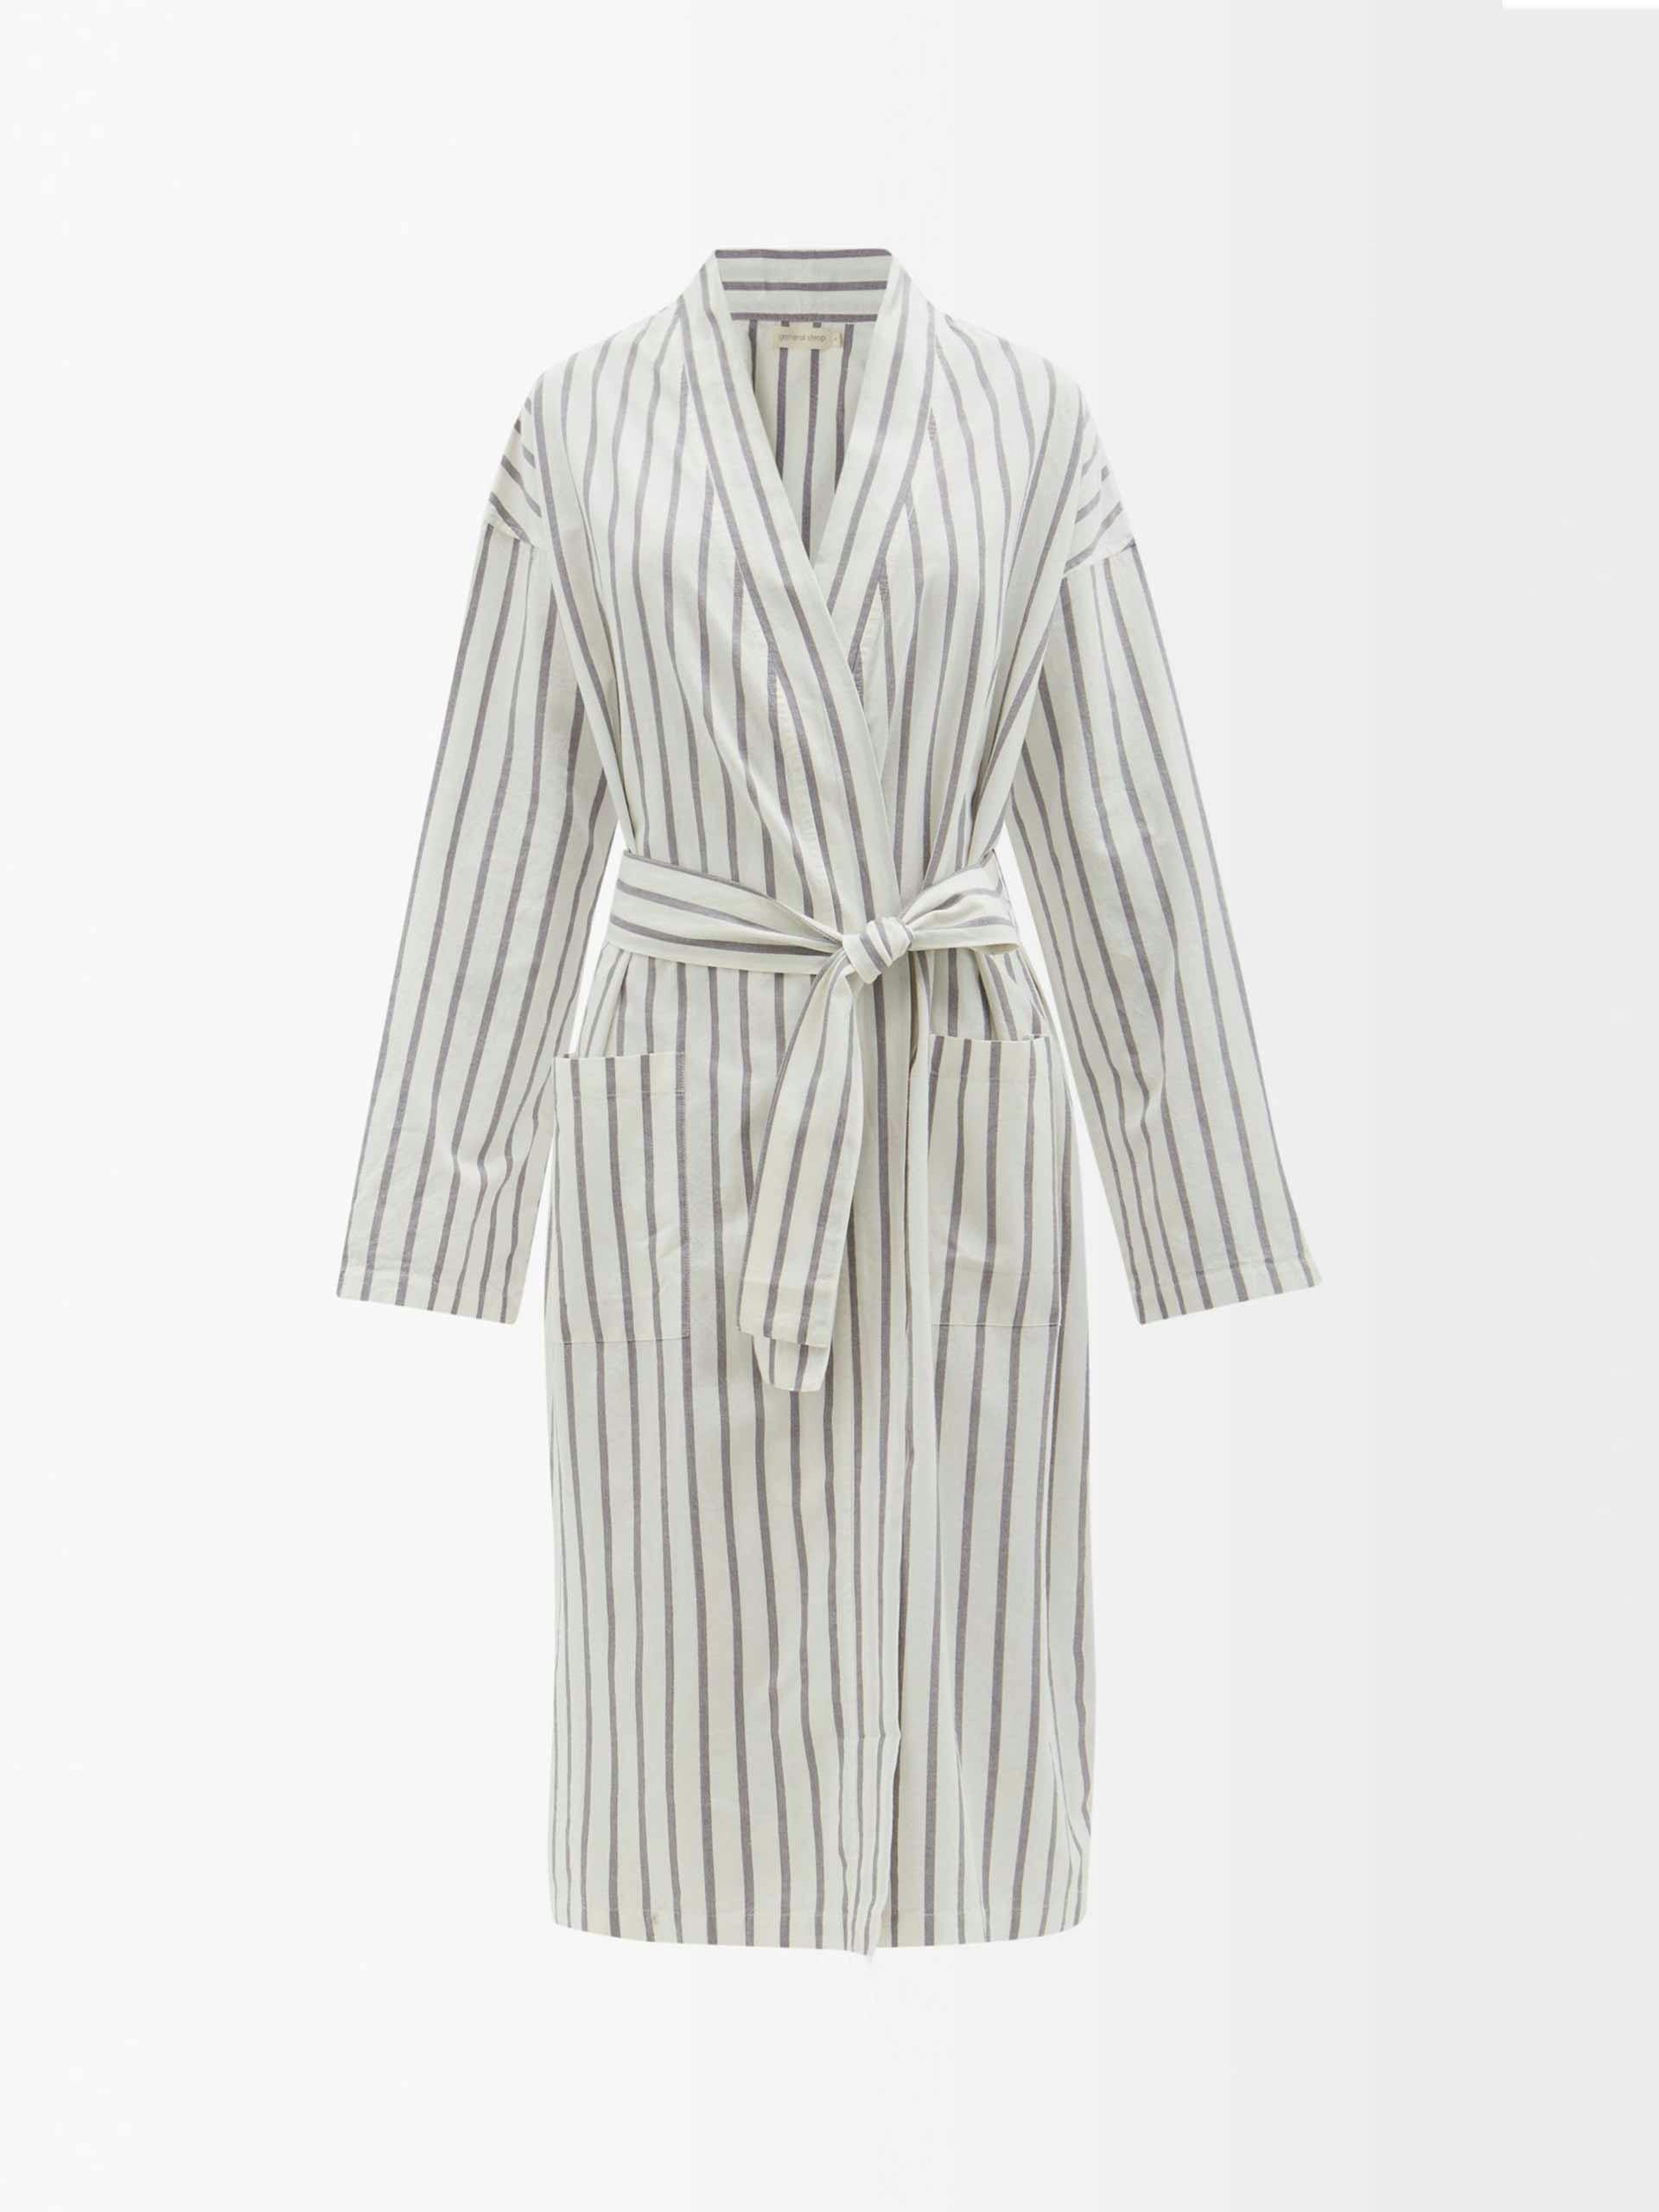 White striped cotton robe